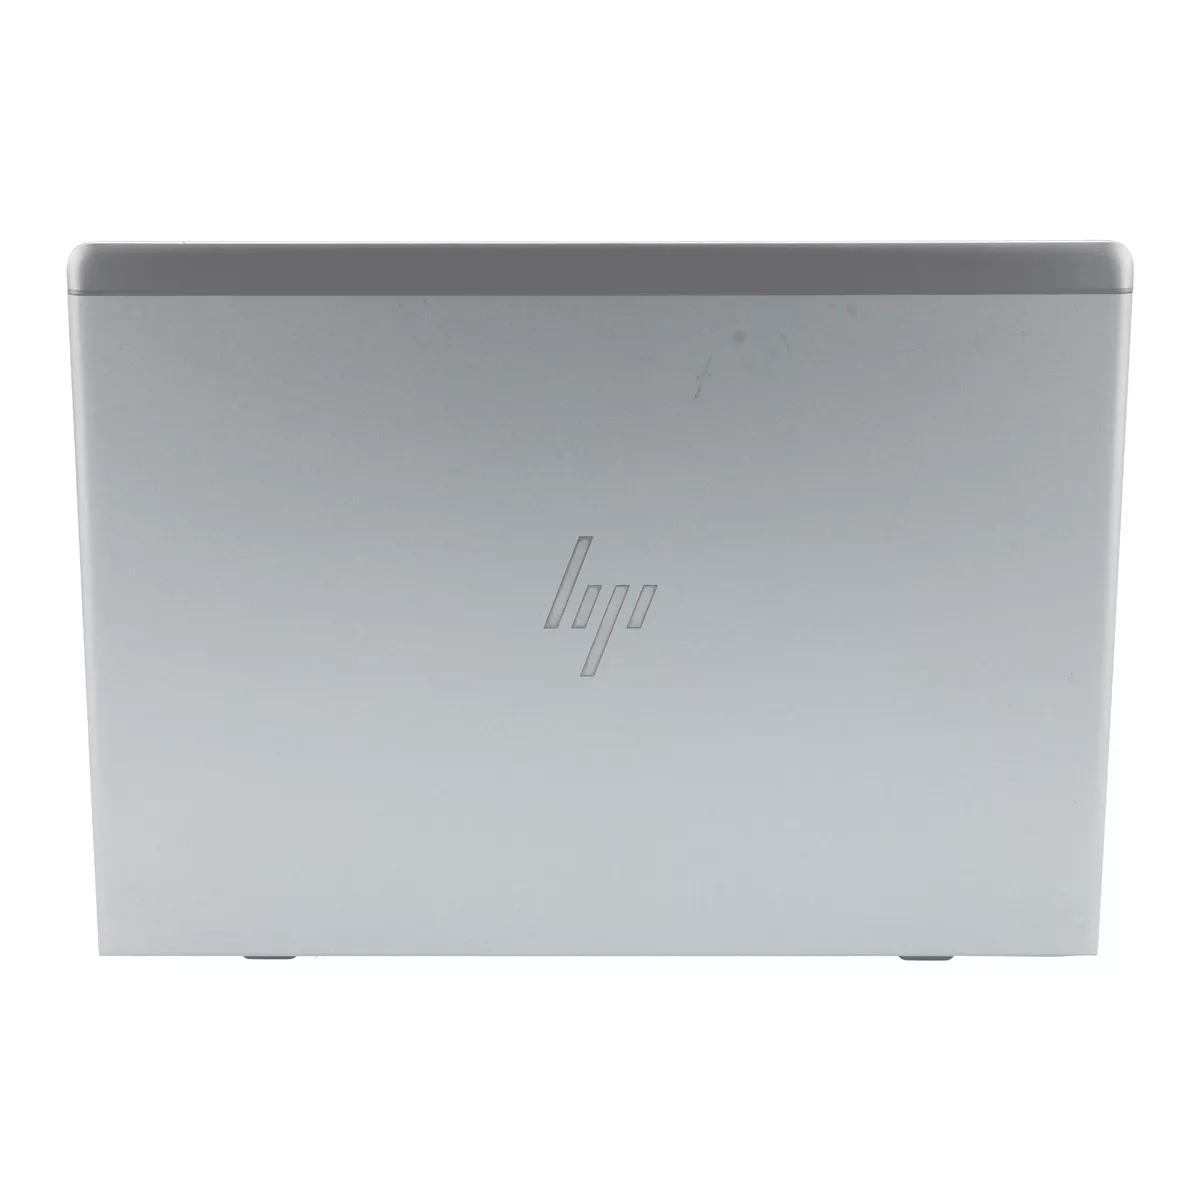 HP EliteBook 830 G6 Core i5 8365U Full-HD 8 GB 240 GB M.2 nVME SSD Touch Webcam A